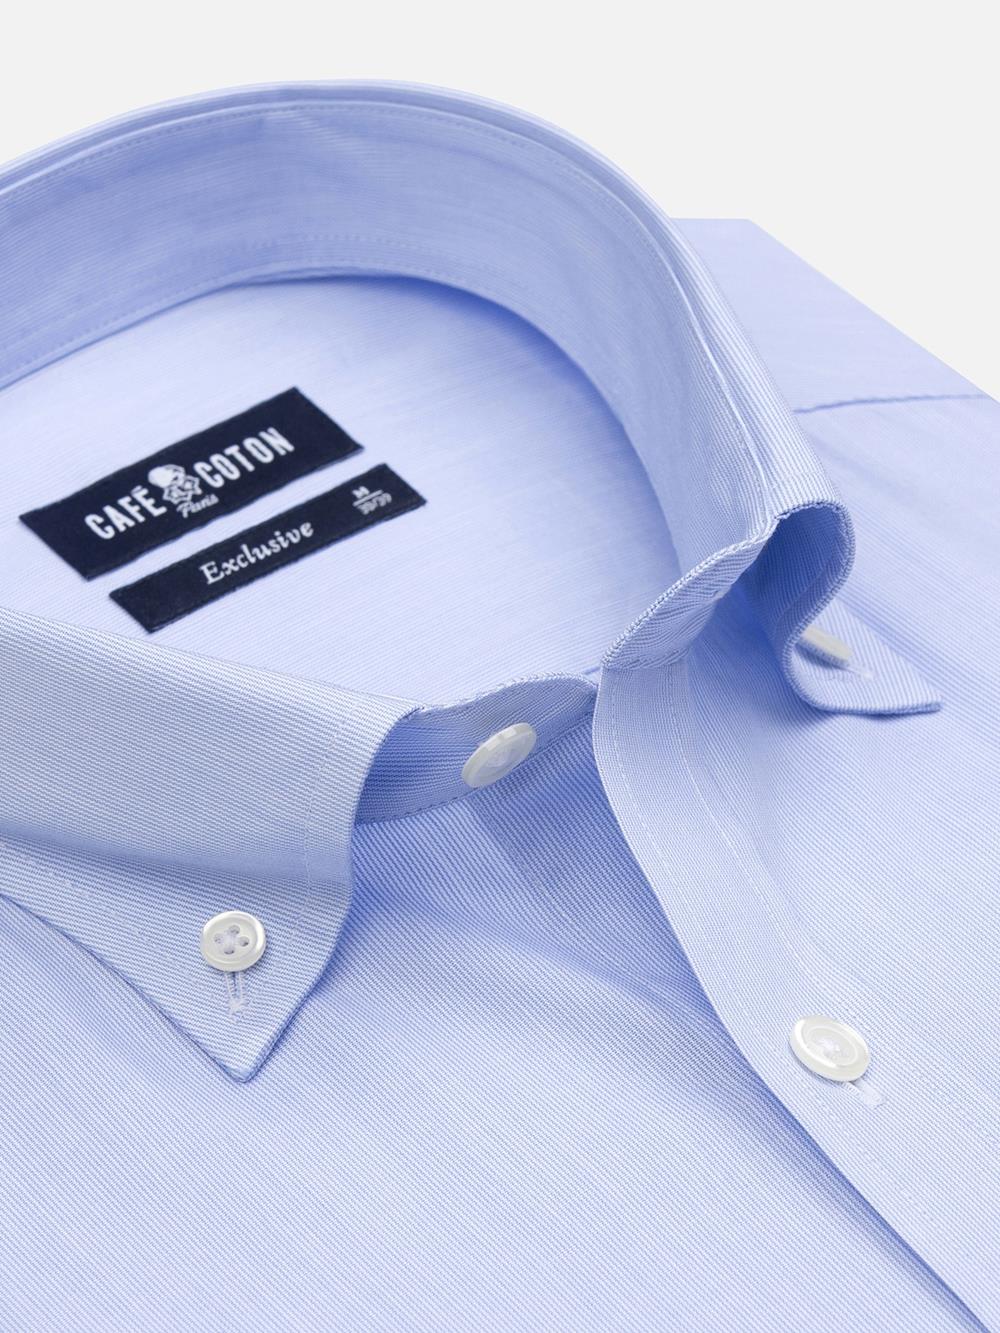 Hemd mit tausend Streifen himmelblau - Buttondown Kragen